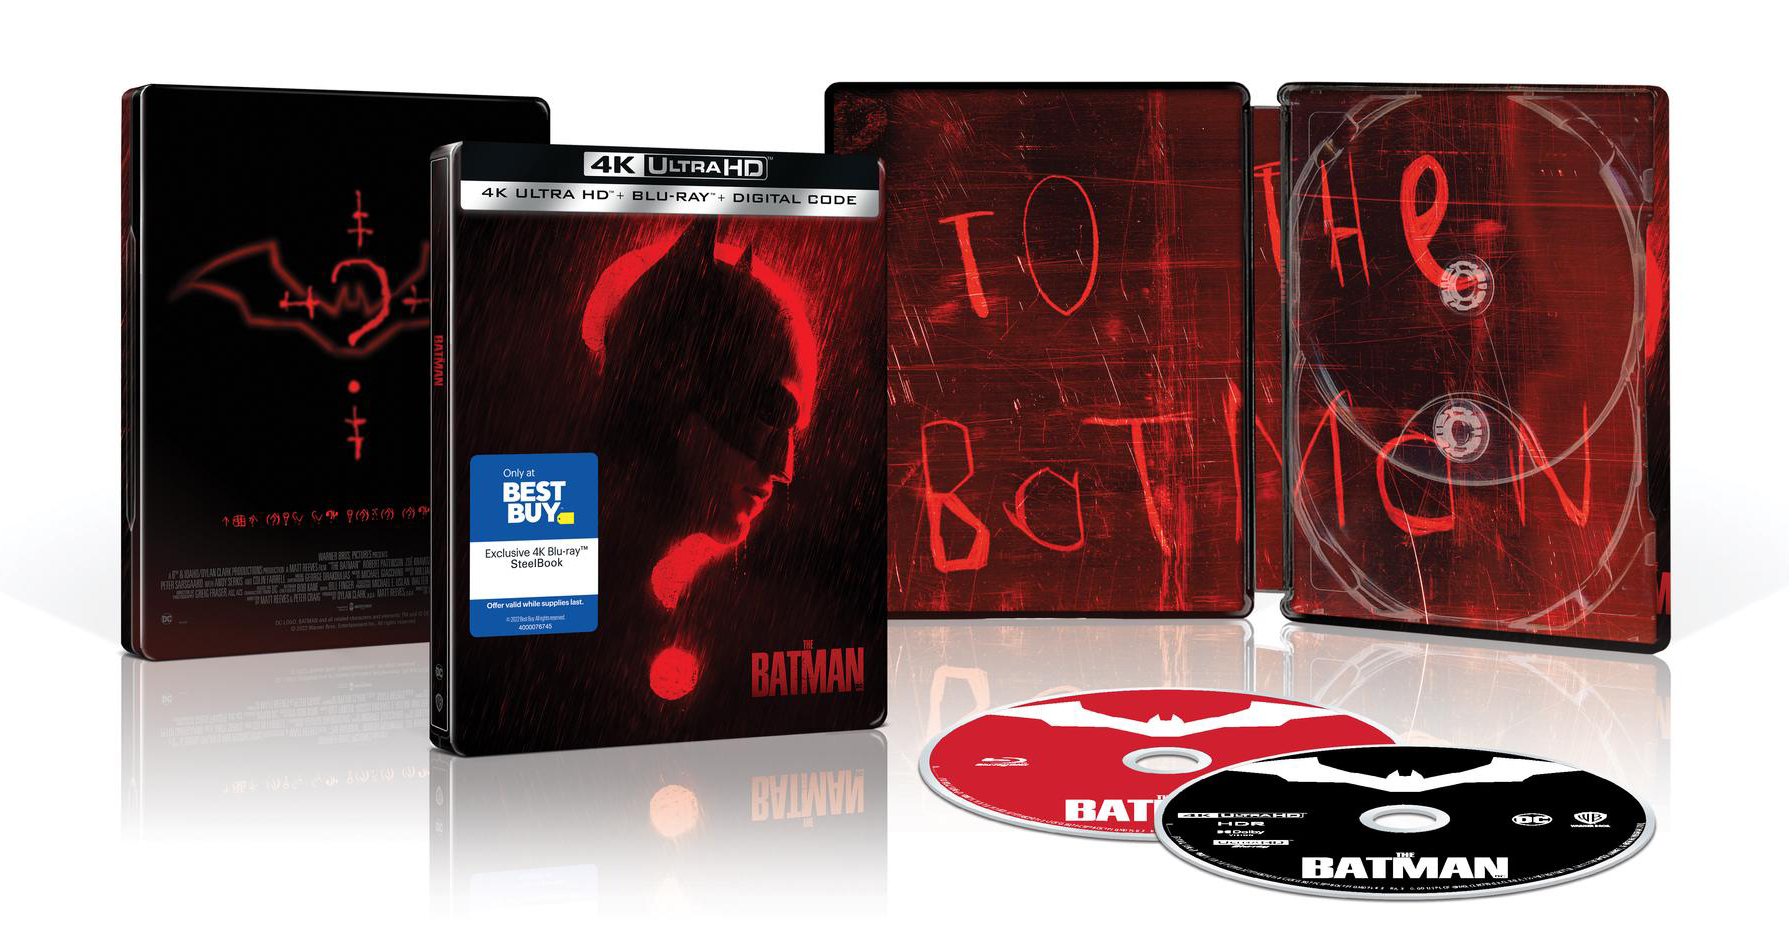 The Batman [SteelBook] [Includes Digital Copy] [4K Ultra HD Blu-ray/Blu-ray] [Only @ Best Buy] [2022]